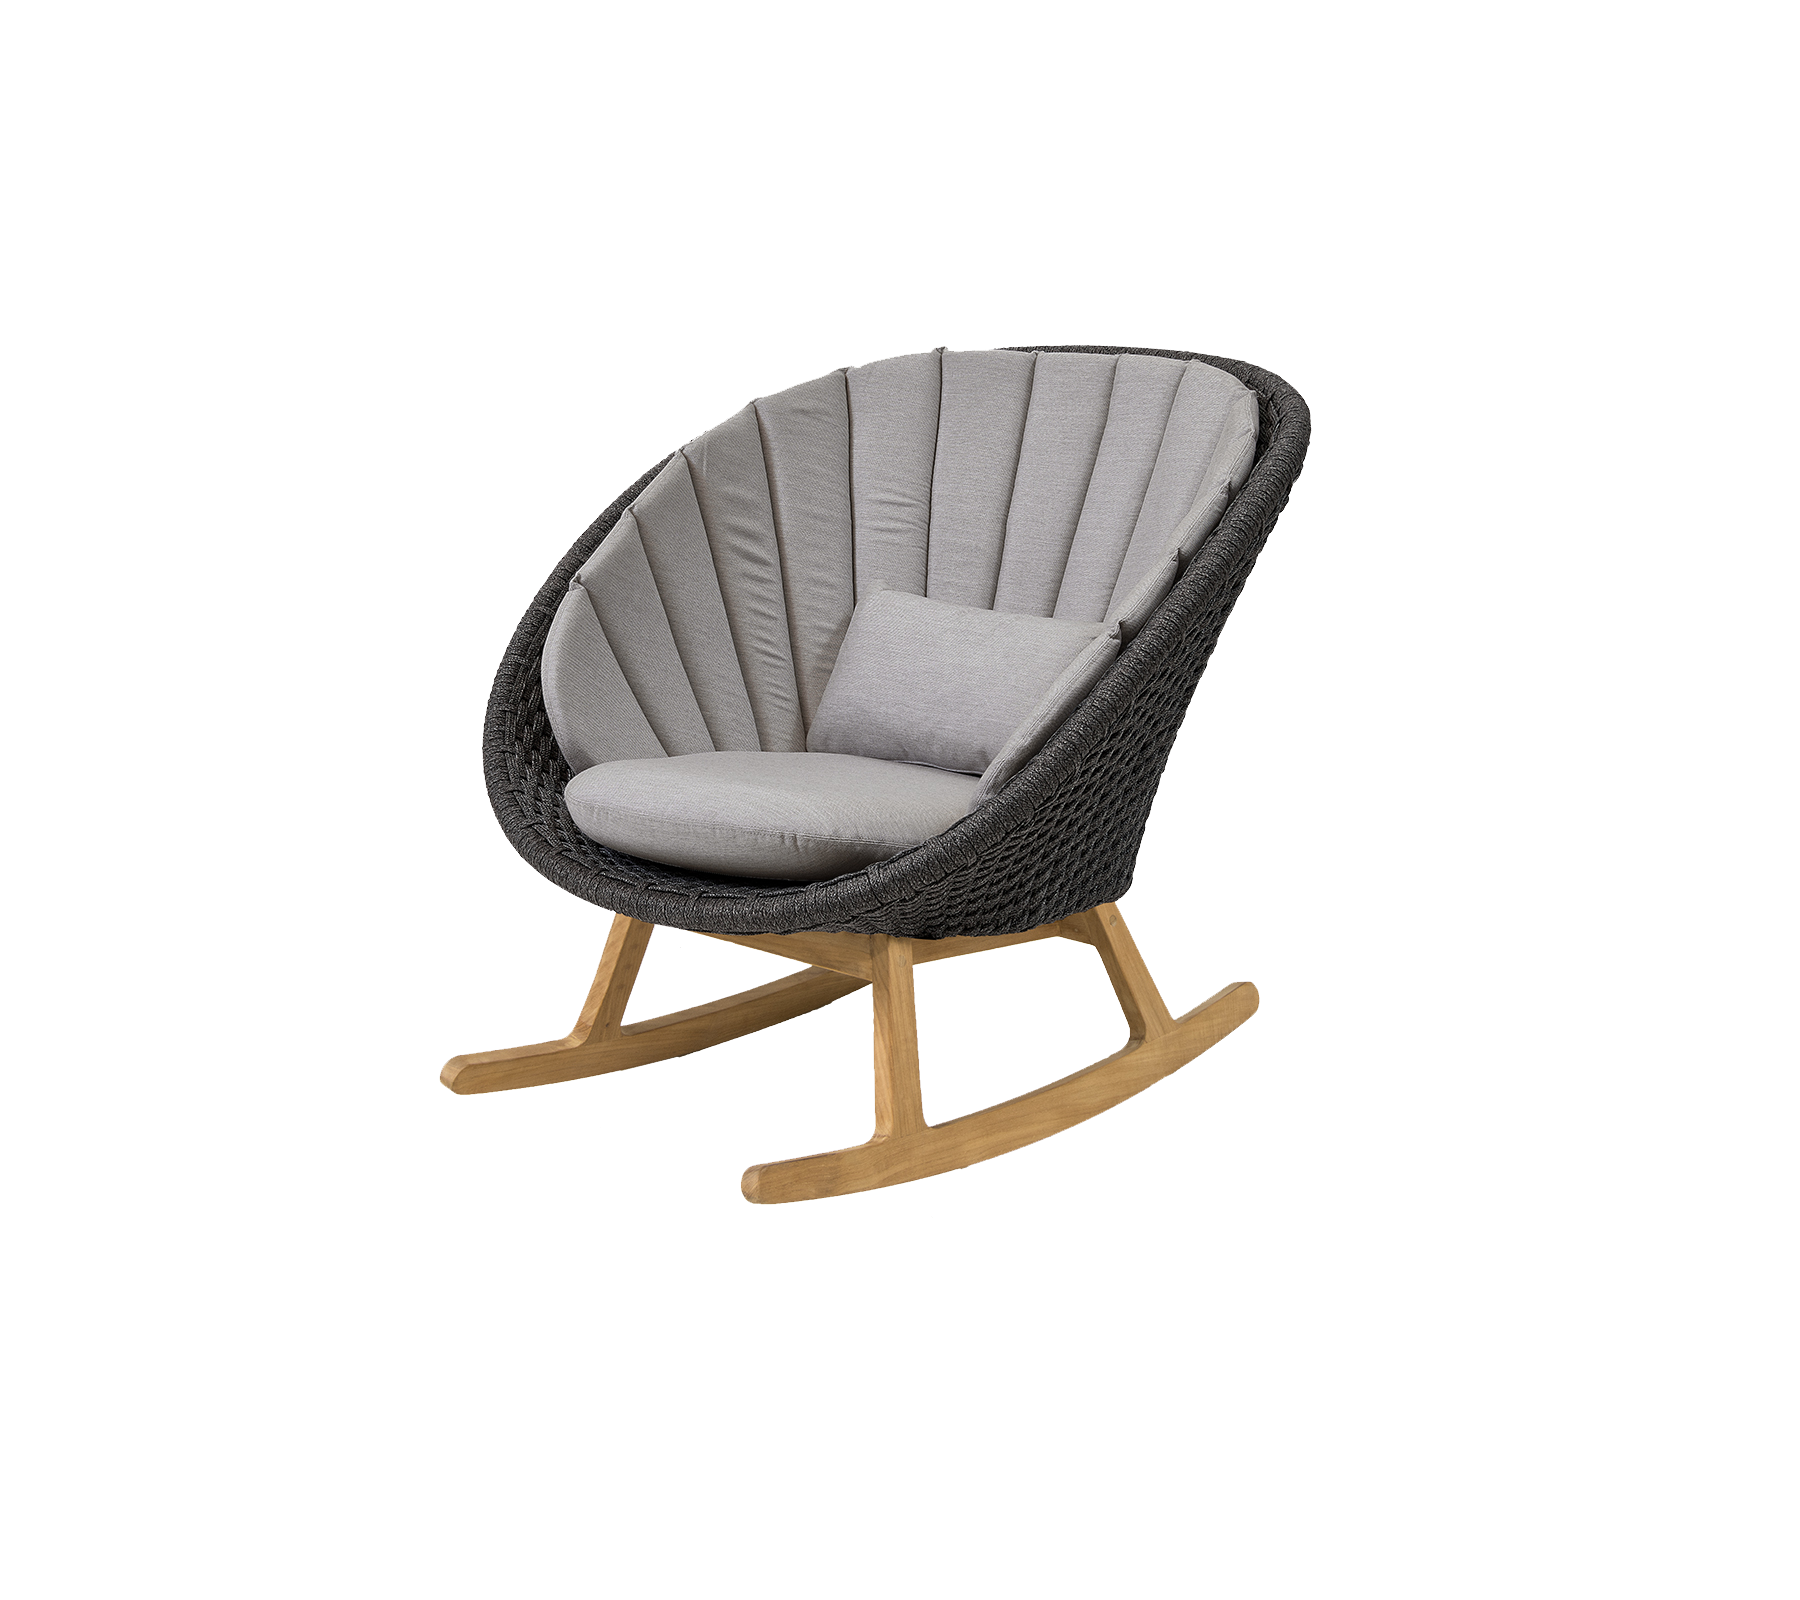 Cushion set, Peacock Rocking chair